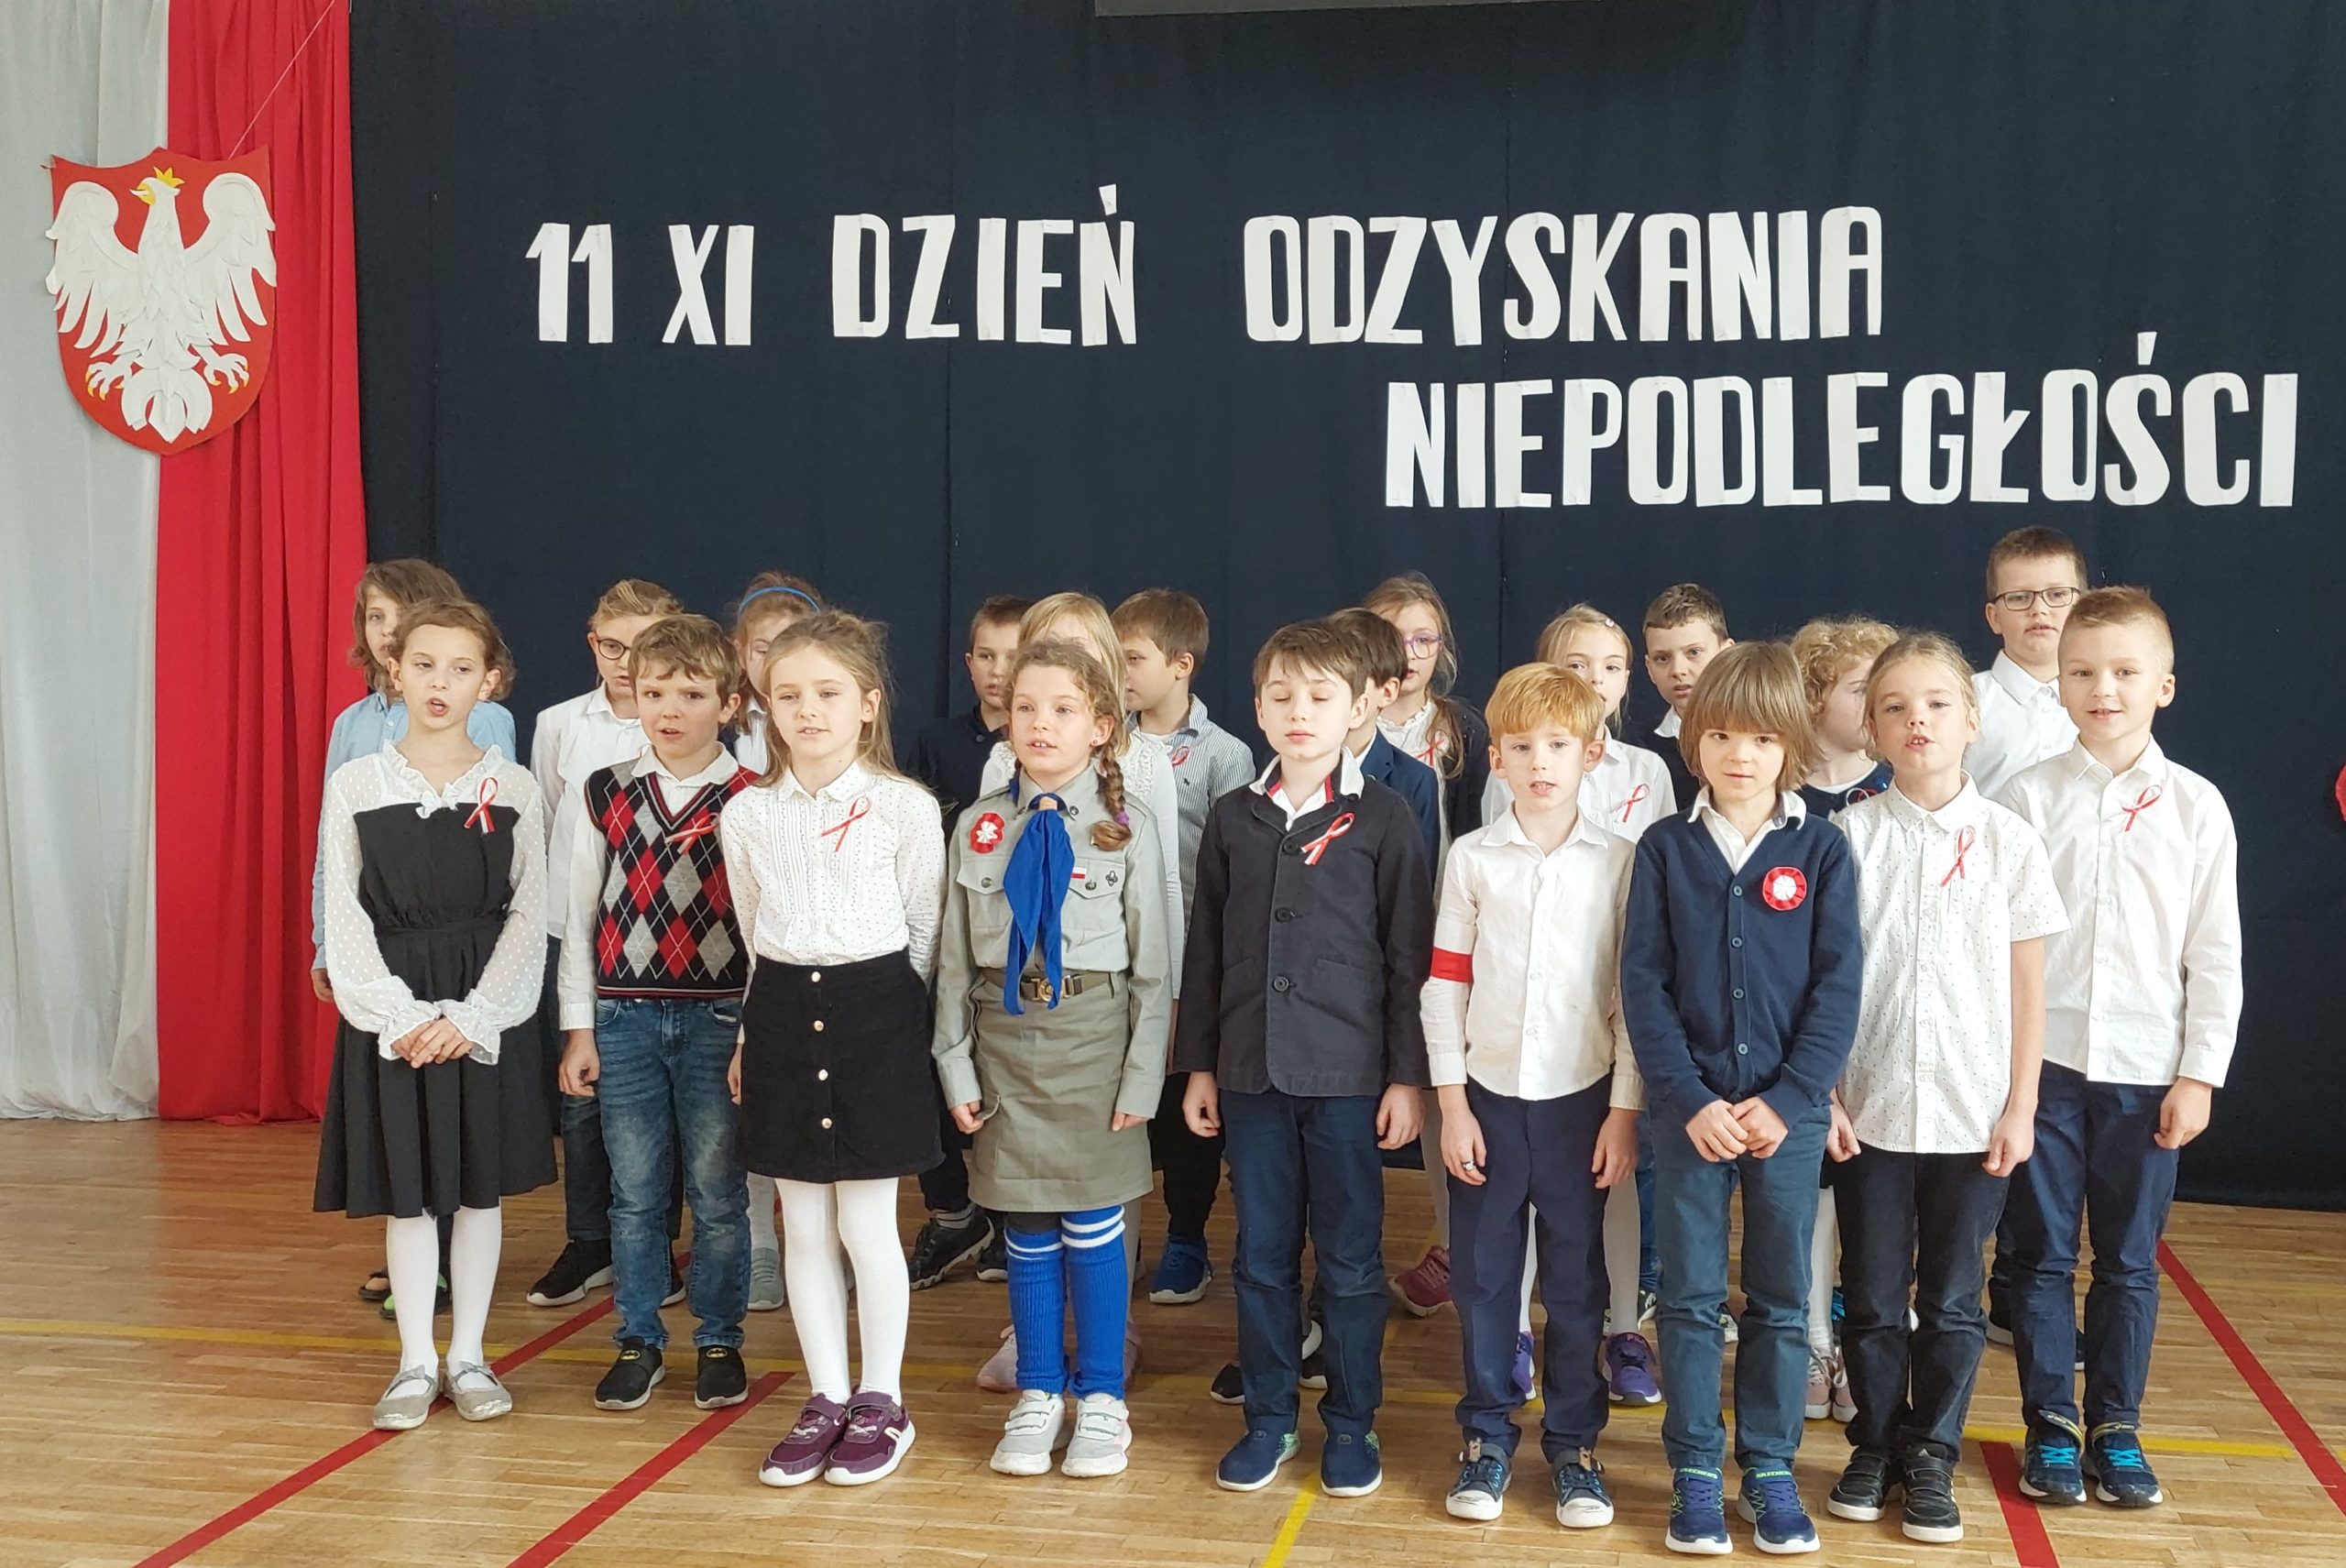 Ponad 20 ubranych na galowo dzieci stoi na sali. W tyle godło Polski na tle biało czerwonej flagi, a nad dziećmi napis: 11 XI dzień odzyskania niepodległości